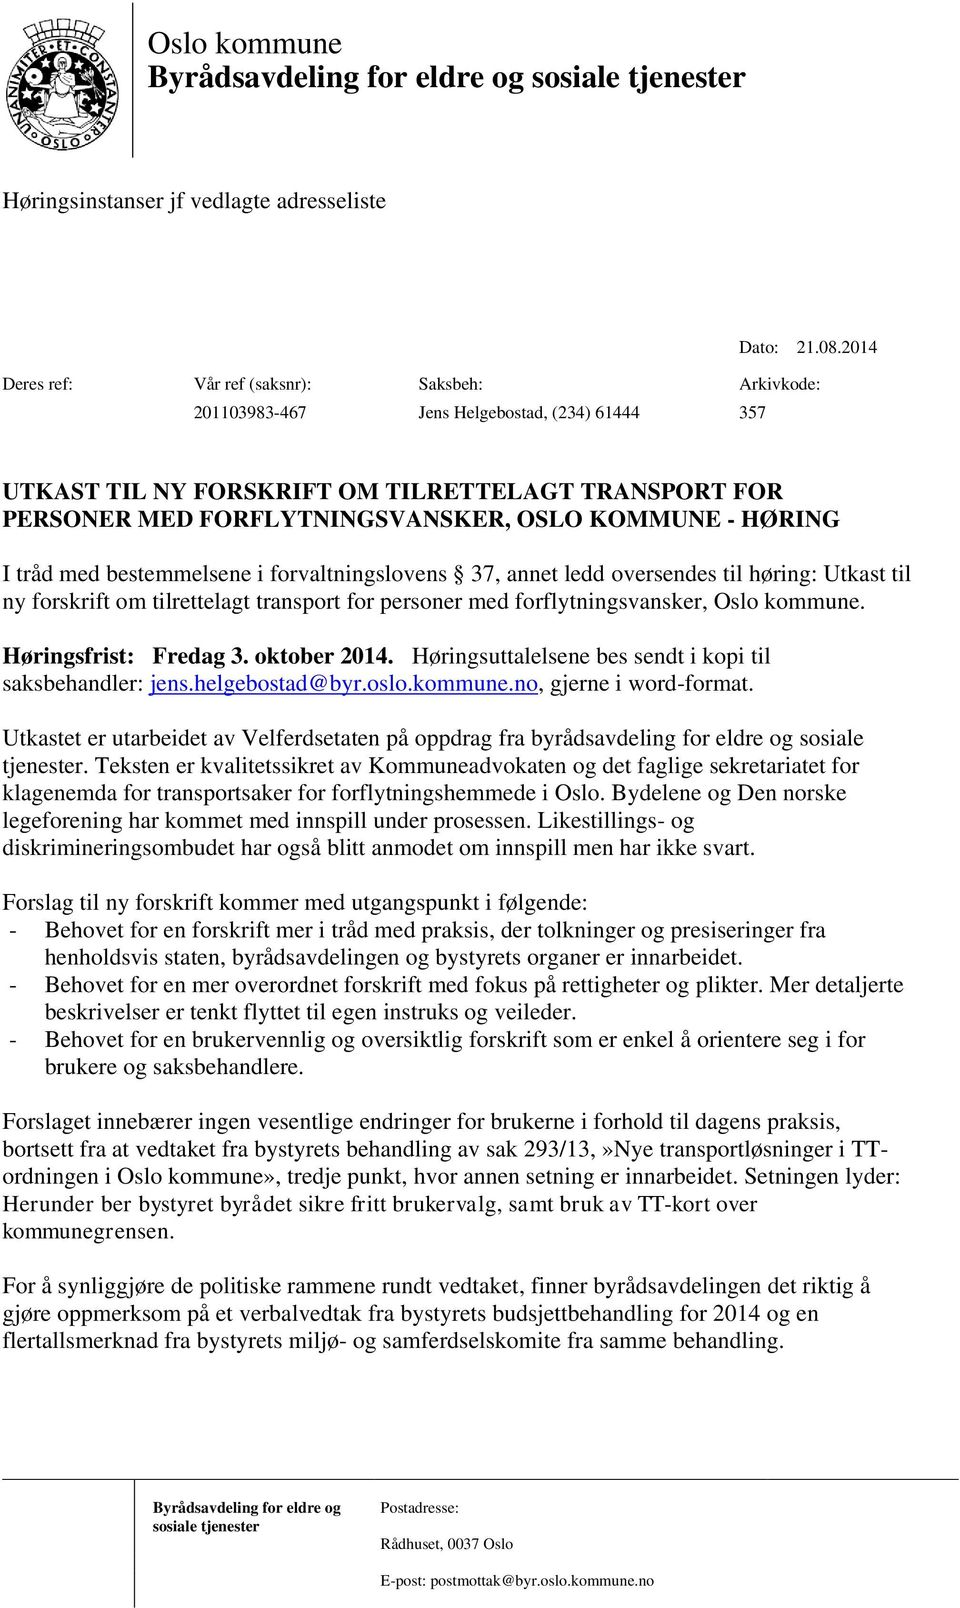 KOMMUNE - HØRING I tråd med bestemmelsene i forvaltningslovens 37, annet ledd oversendes til høring: Utkast til ny forskrift om tilrettelagt transport for personer med forflytningsvansker, Oslo